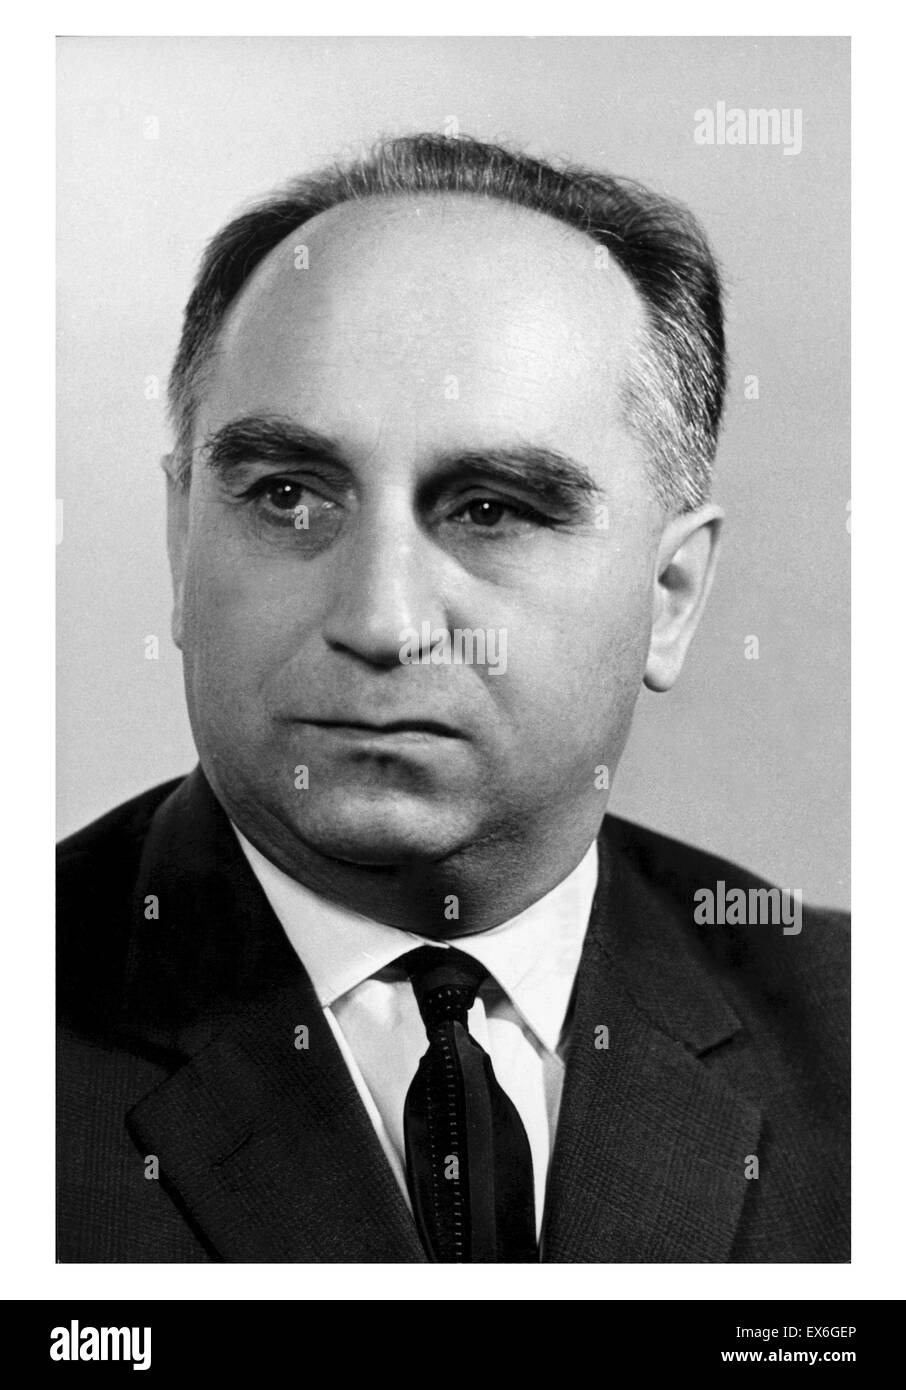 Stefan J?drychowski (9 de mayo de 1910 - 1996)[1] fue un periodista y político comunista polaco, quien se desempeñó como viceprimer ministro, ministro de asuntos exteriores y ministro de hacienda en Polonia Foto de stock